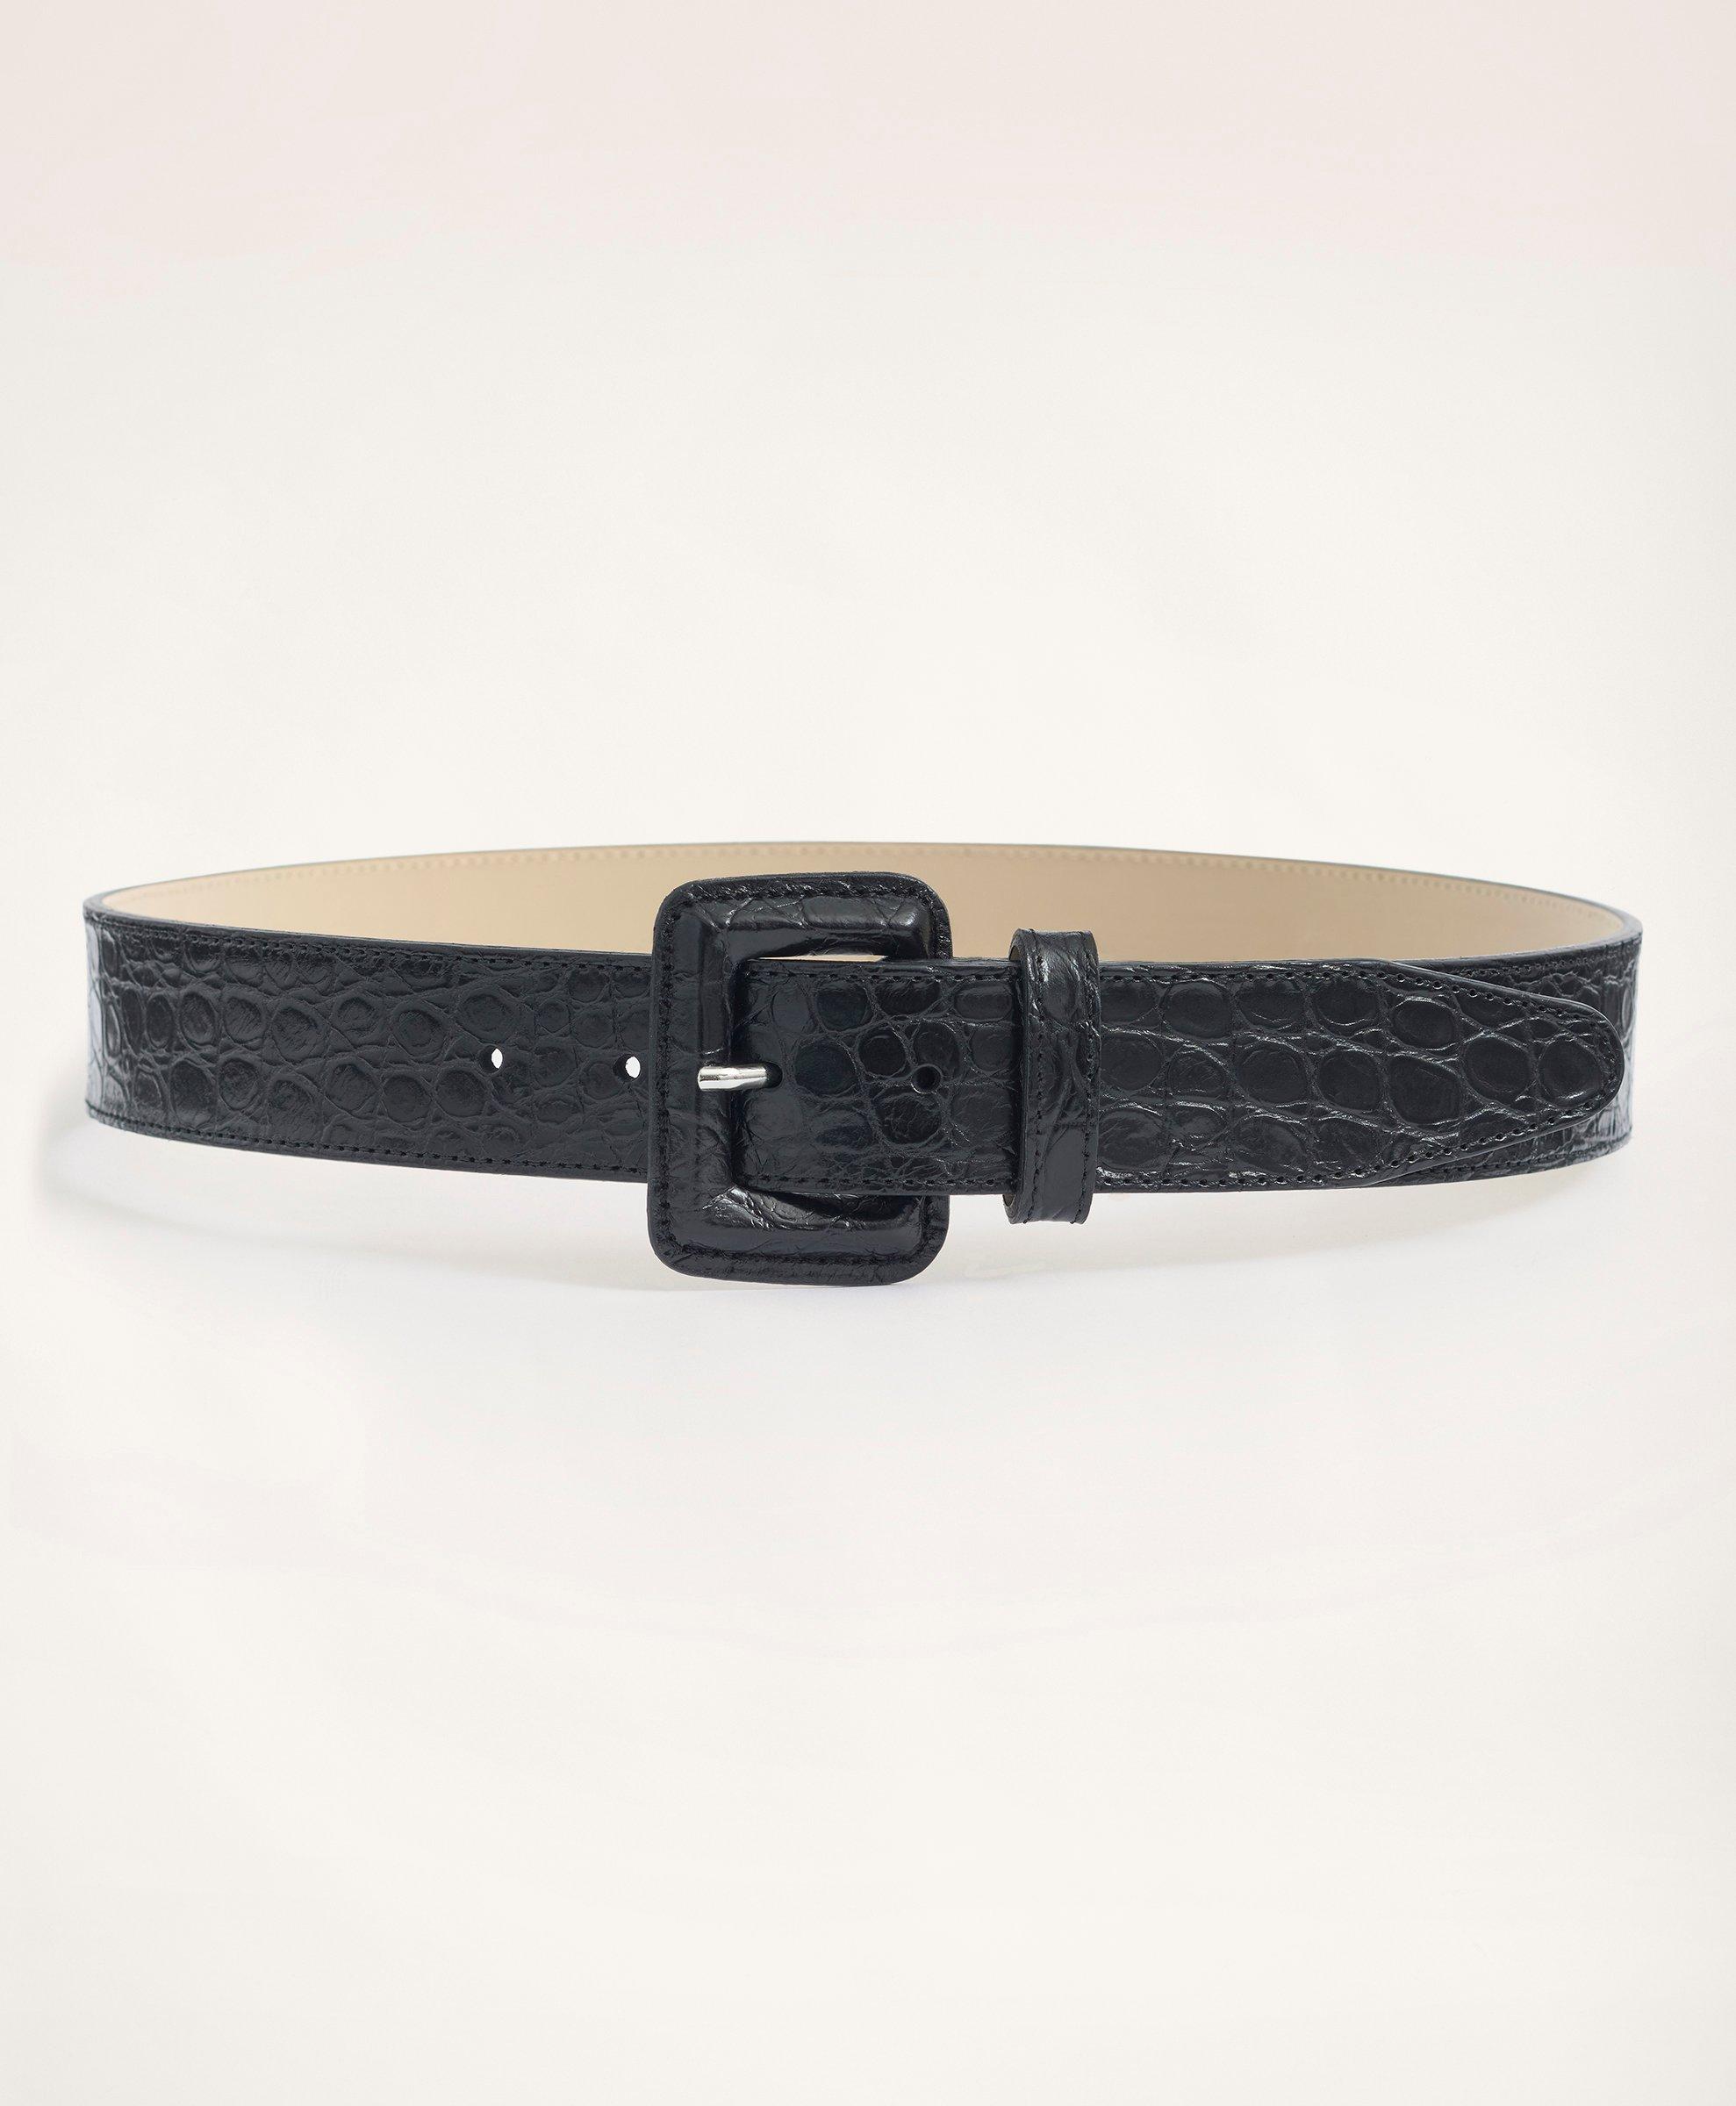 Brooks Brothers Leather Croc Embossed Belt | Black | Size Medium